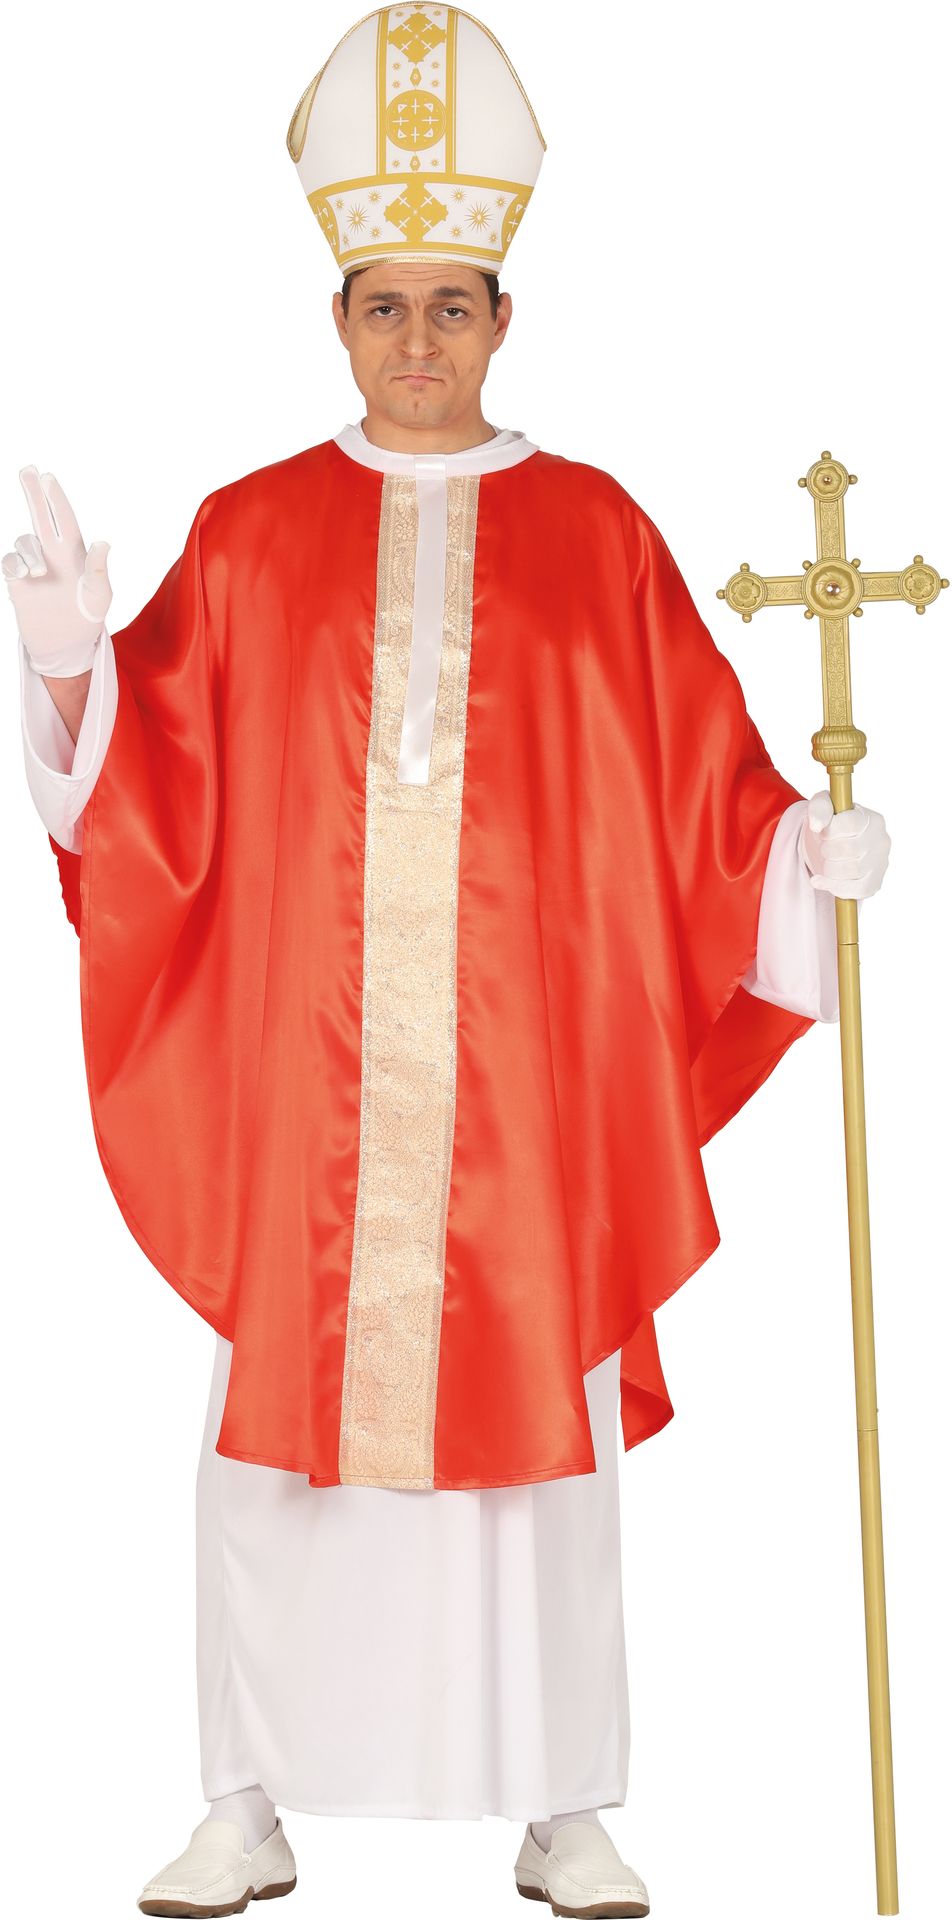 De Paus kostuum